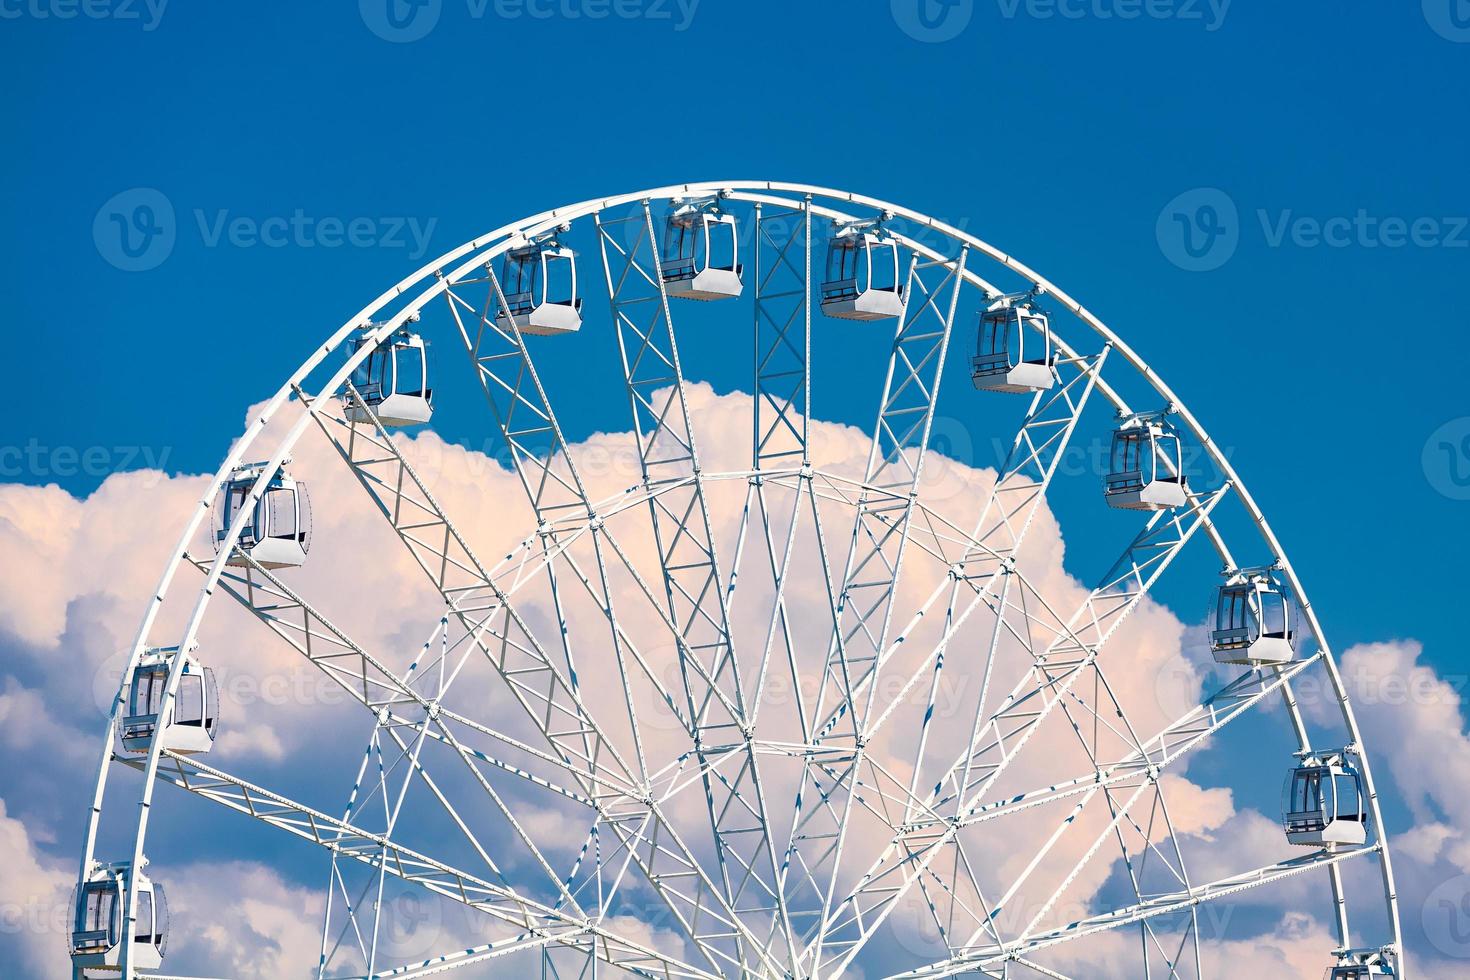 grande roda gigante contra o céu azul e nuvens brancas foto